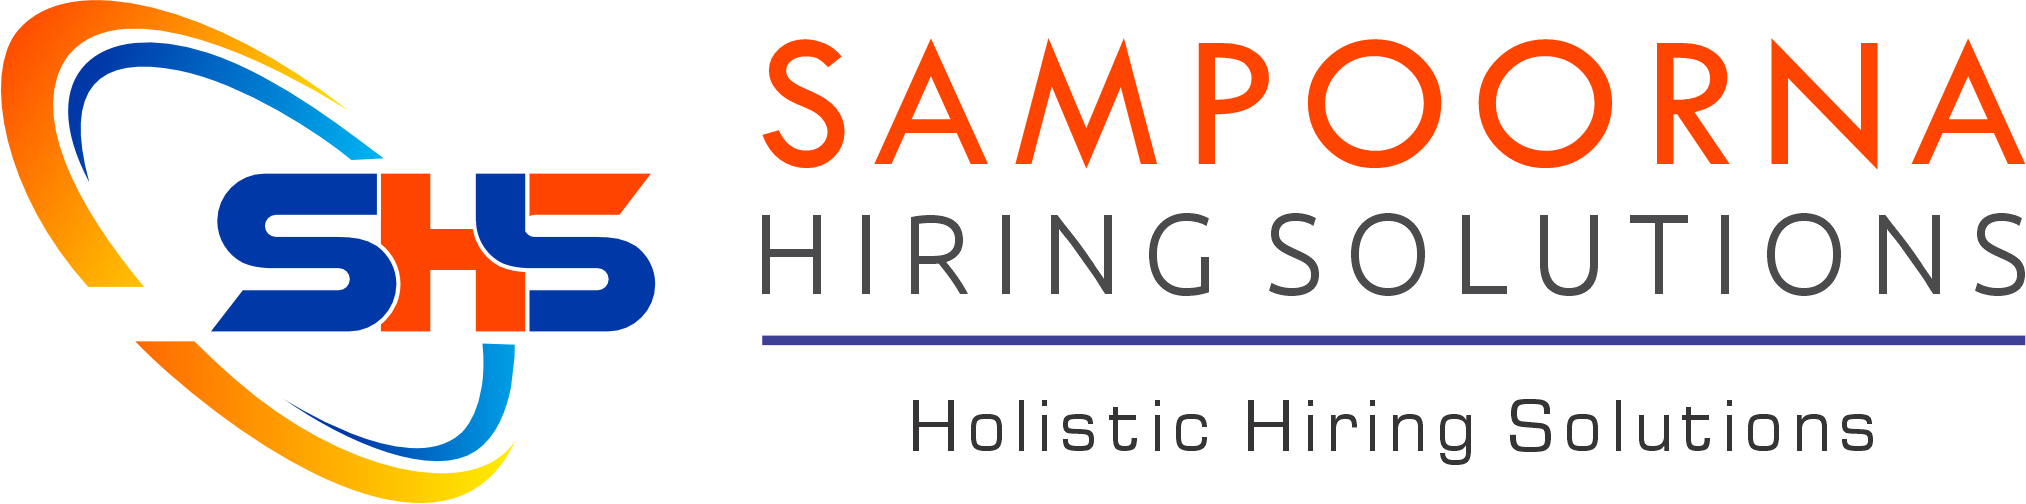 Sampoorna Hiring Solutions Logo